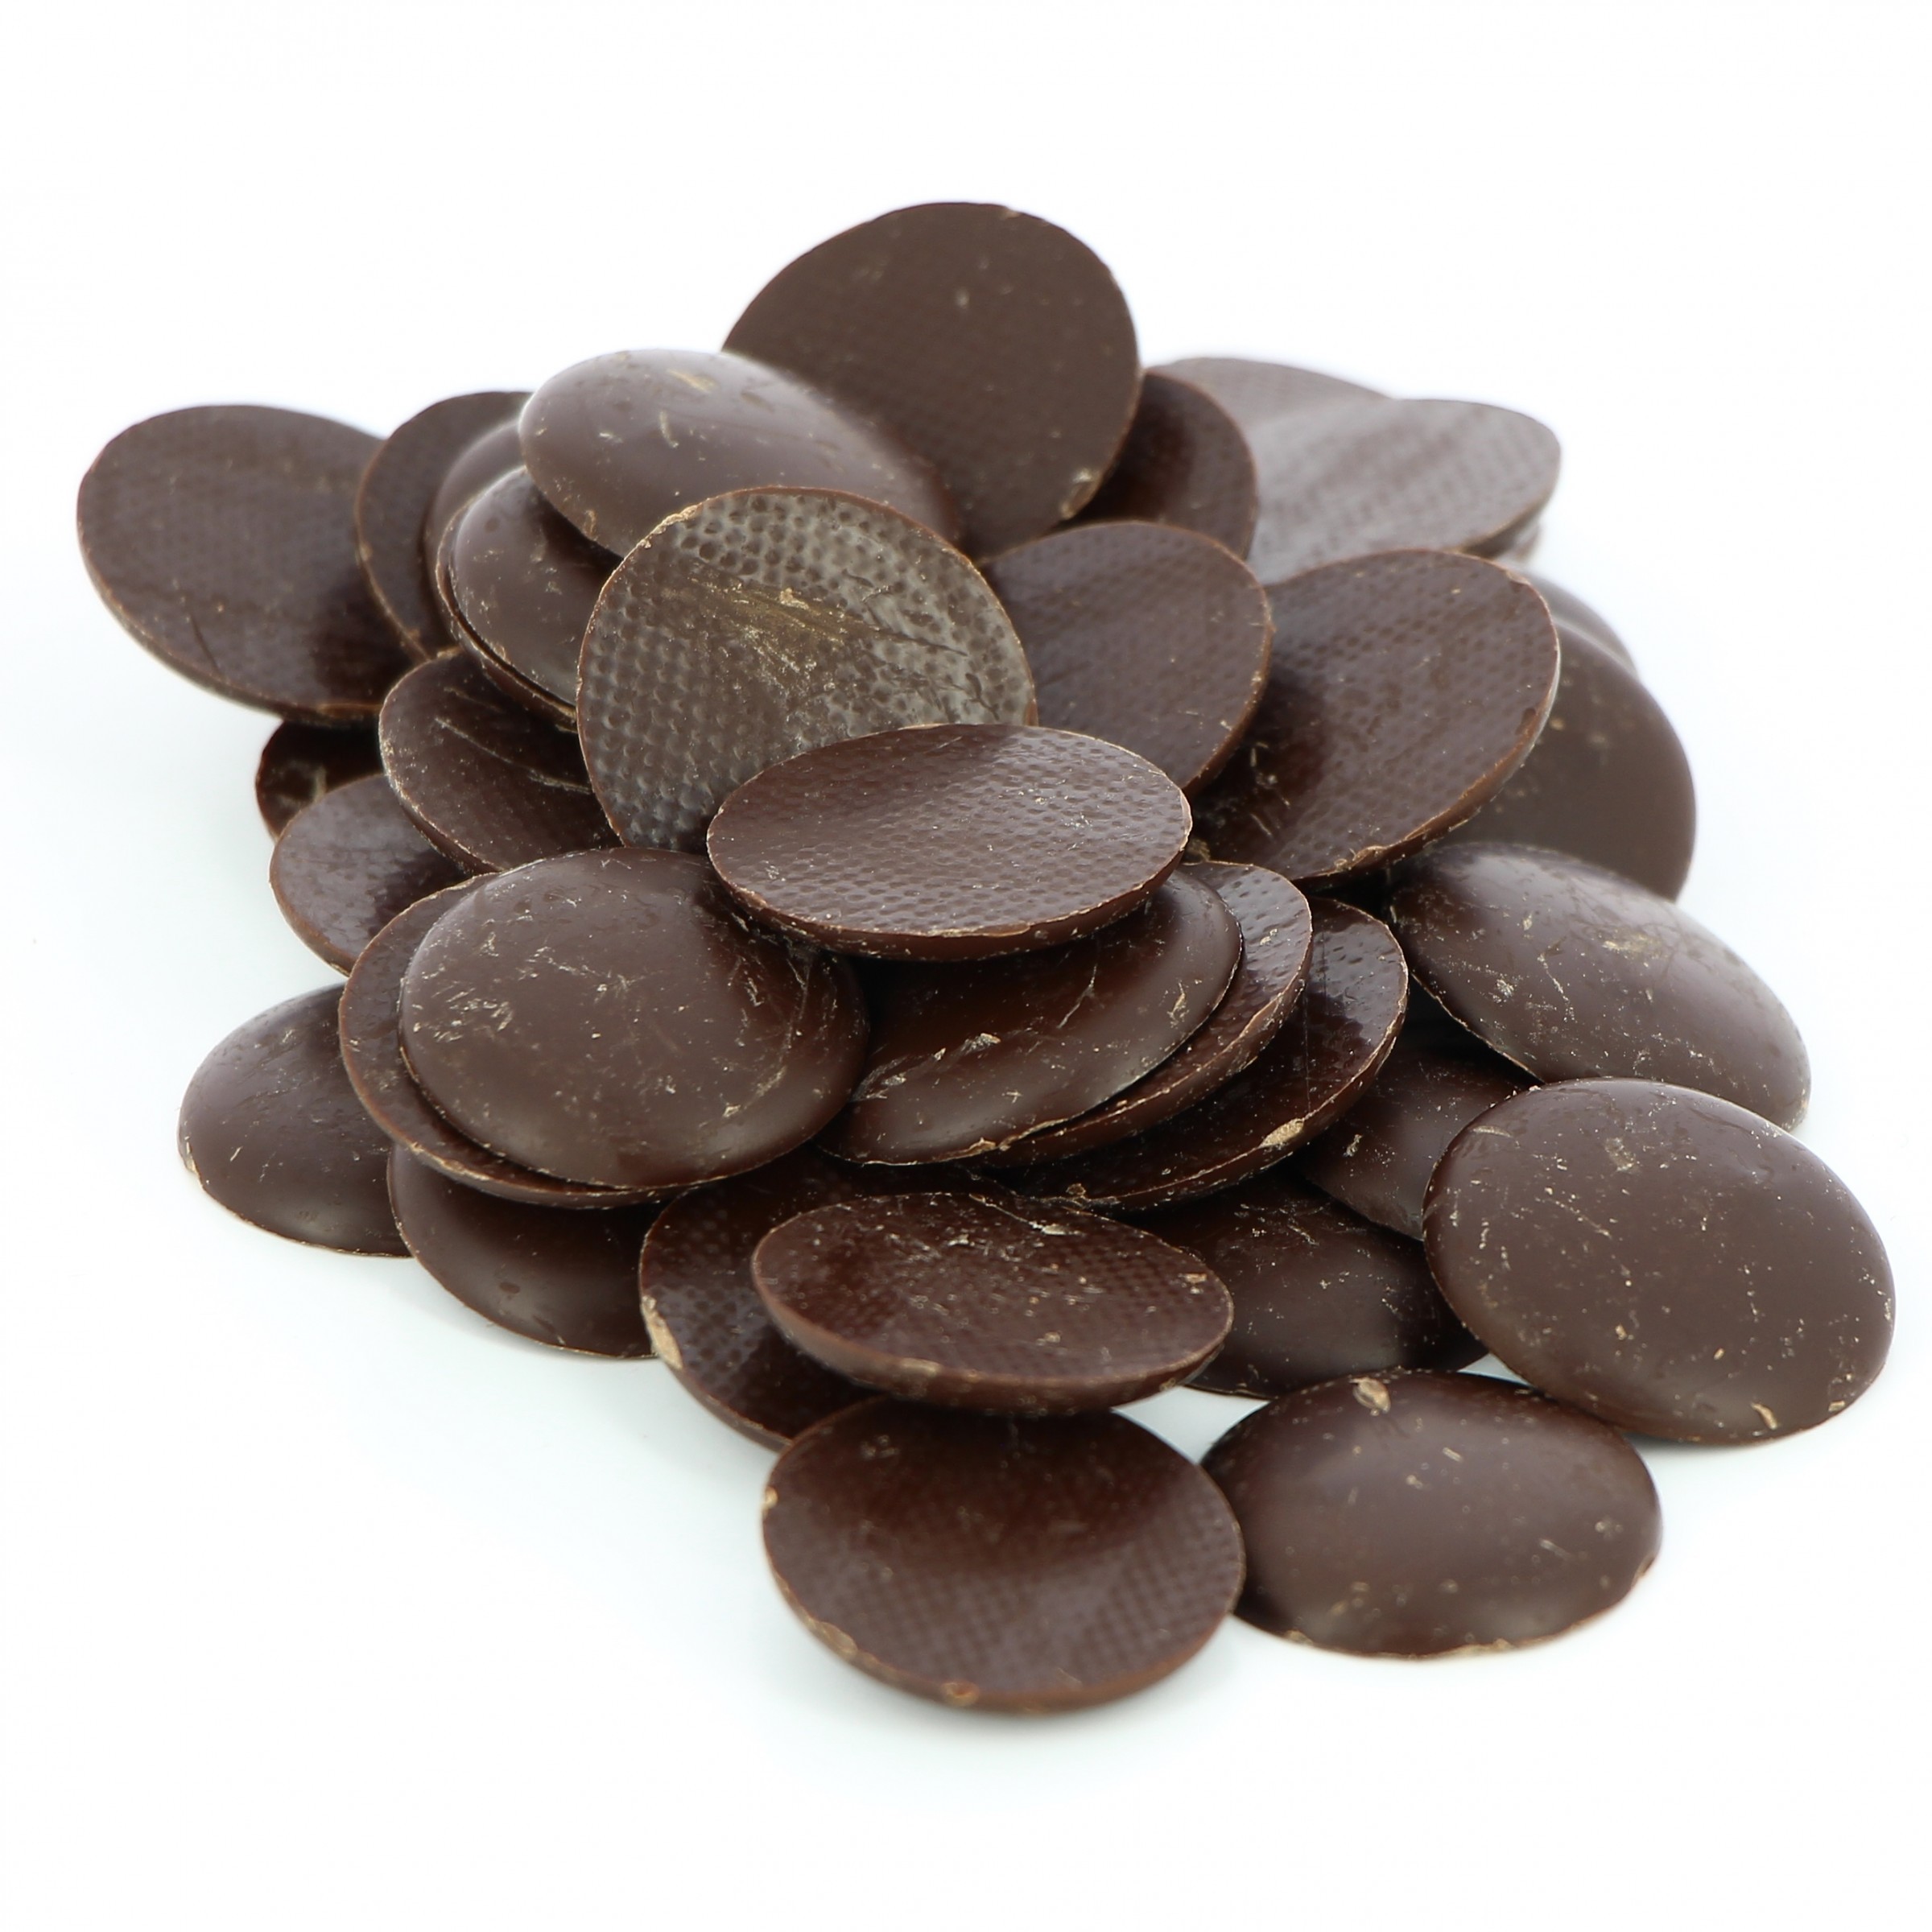 Tablette chocolat noir 67% sans sucre